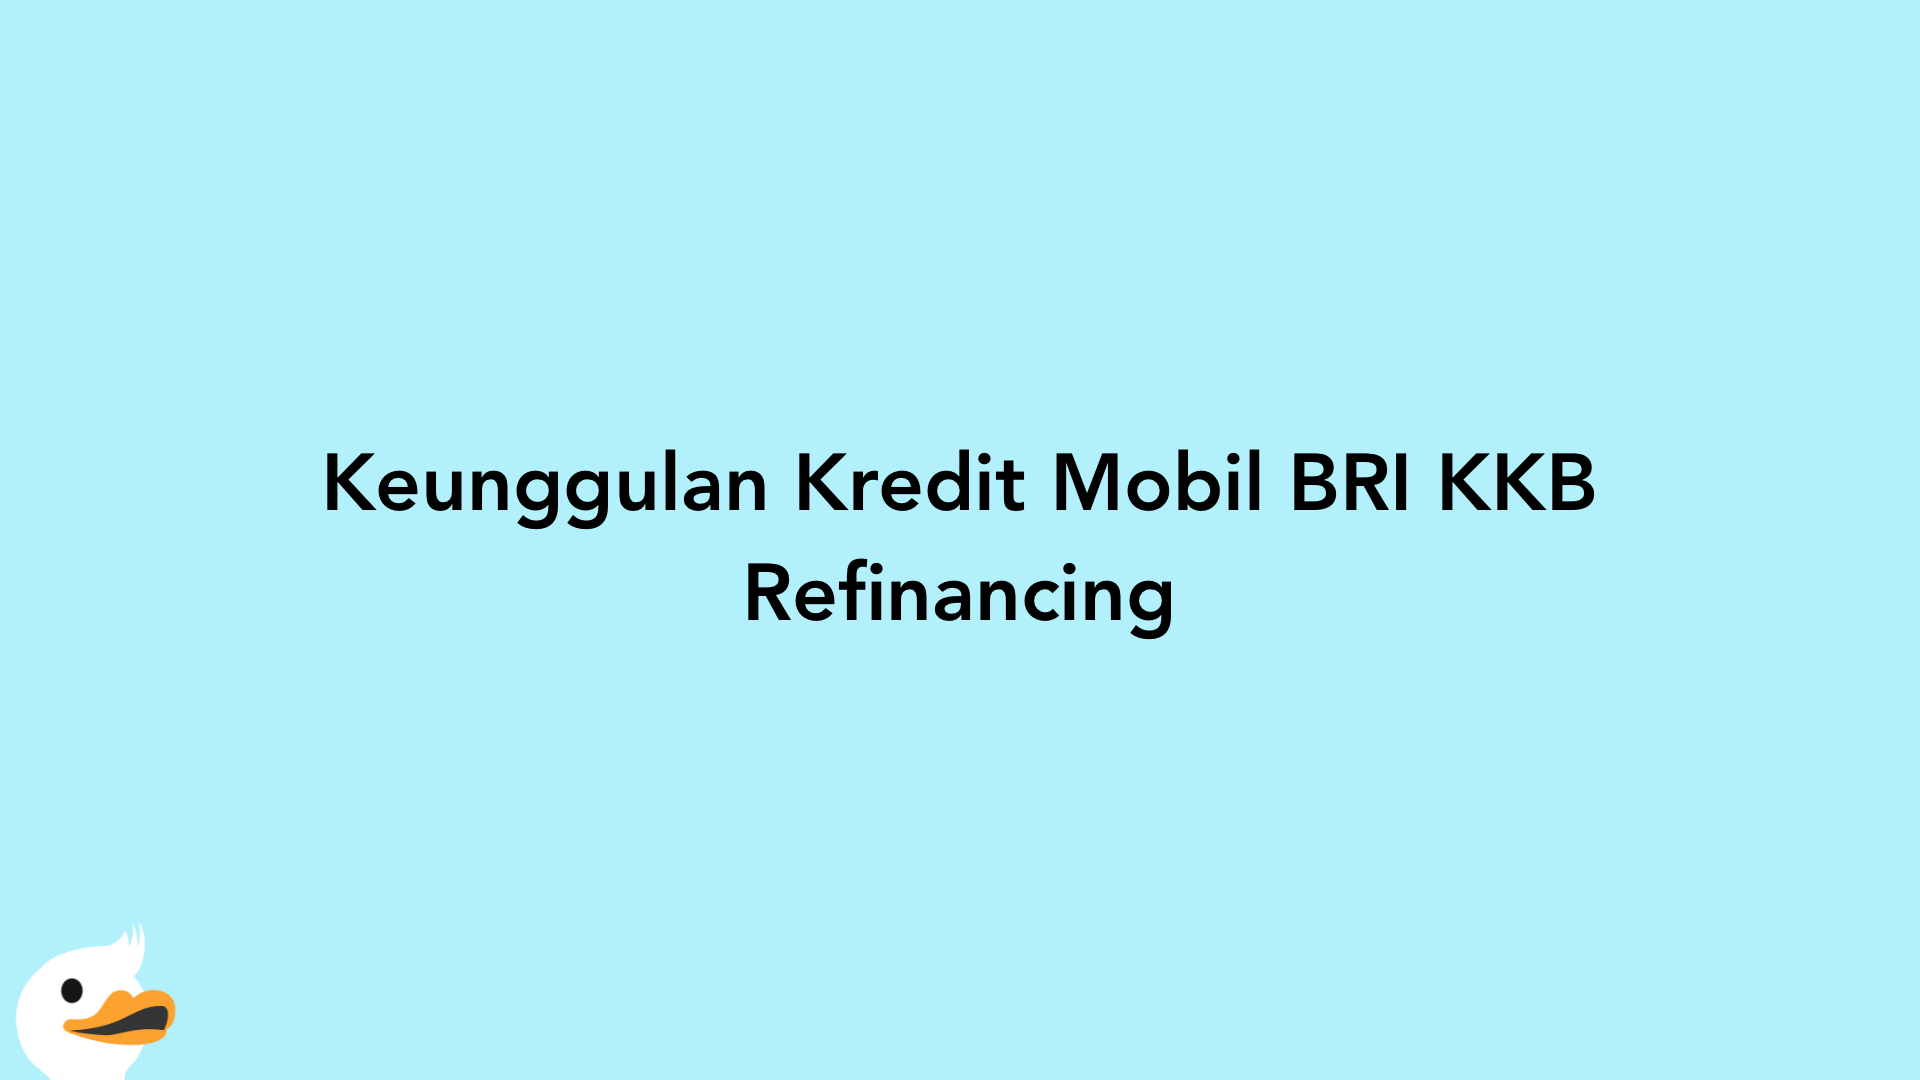 Keunggulan Kredit Mobil BRI KKB Refinancing